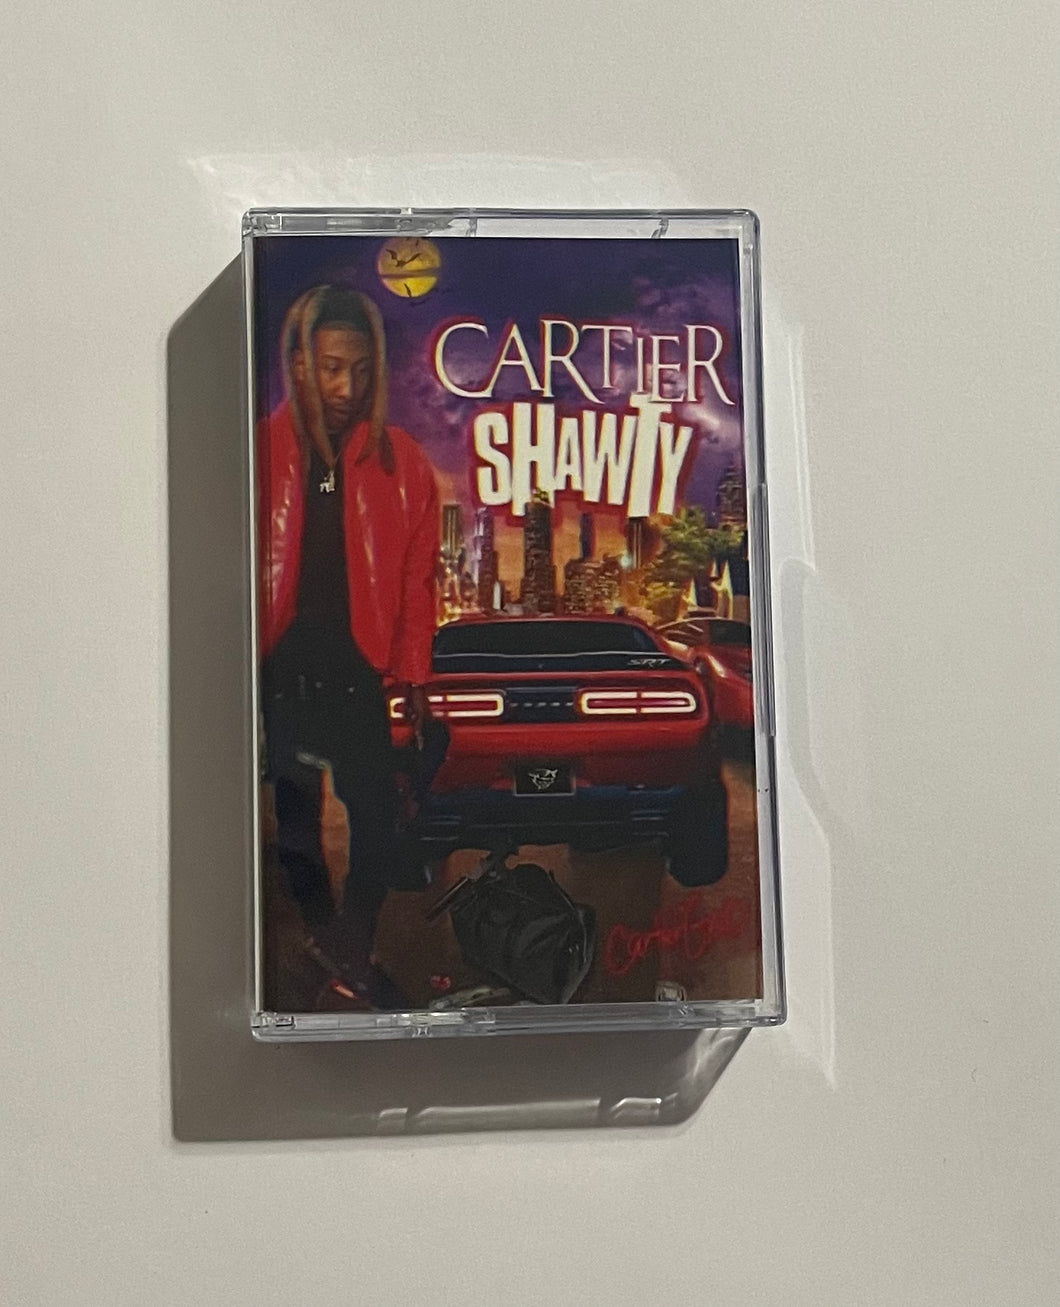 Cartier Shawty Cassette Tape (LAST ONE)